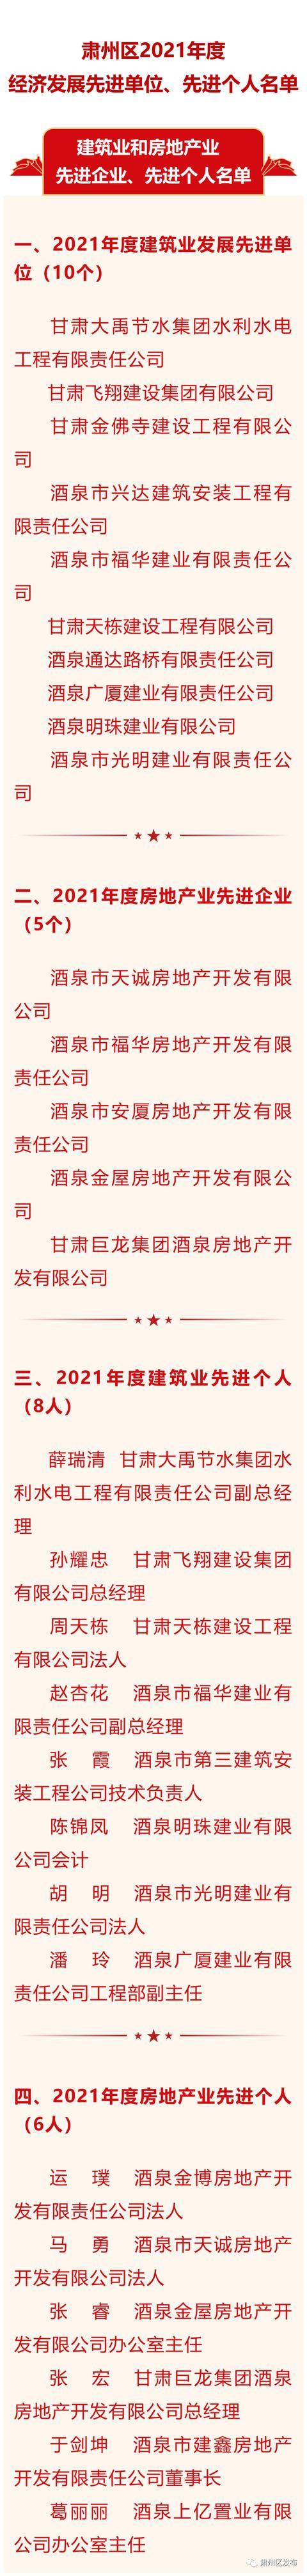 肃州区2021年度建筑业和房地产业、服务业发展、文化旅游先进单位、先进企业、先进个人